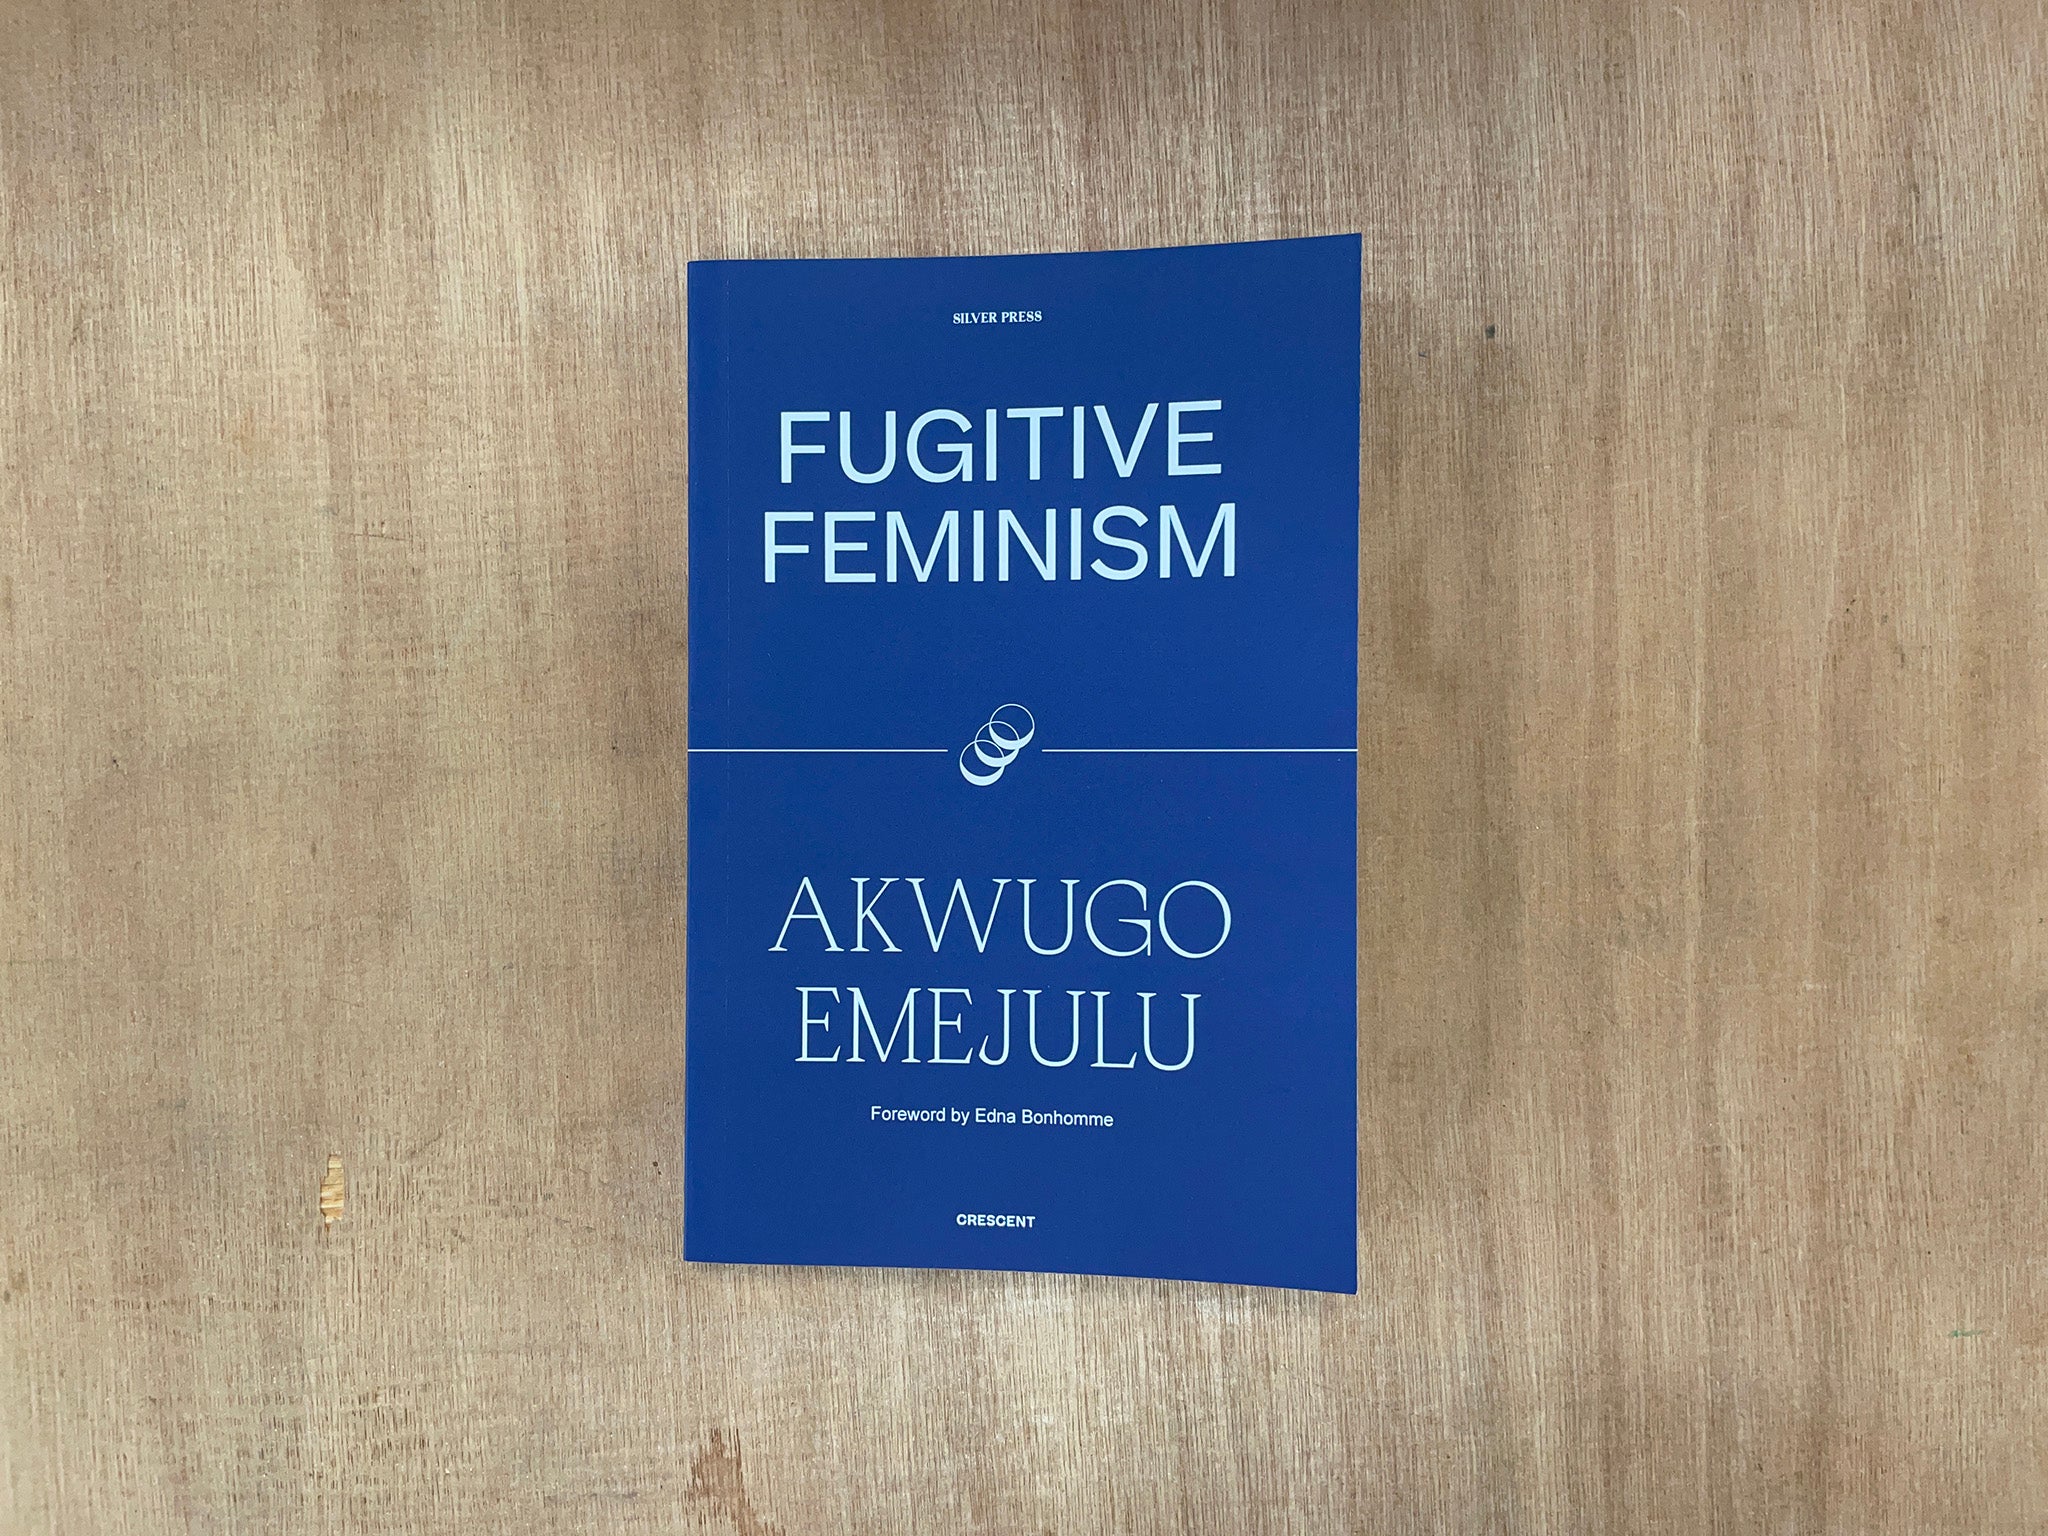 FUGITIVE FEMINISM by Akwugo Emejulu